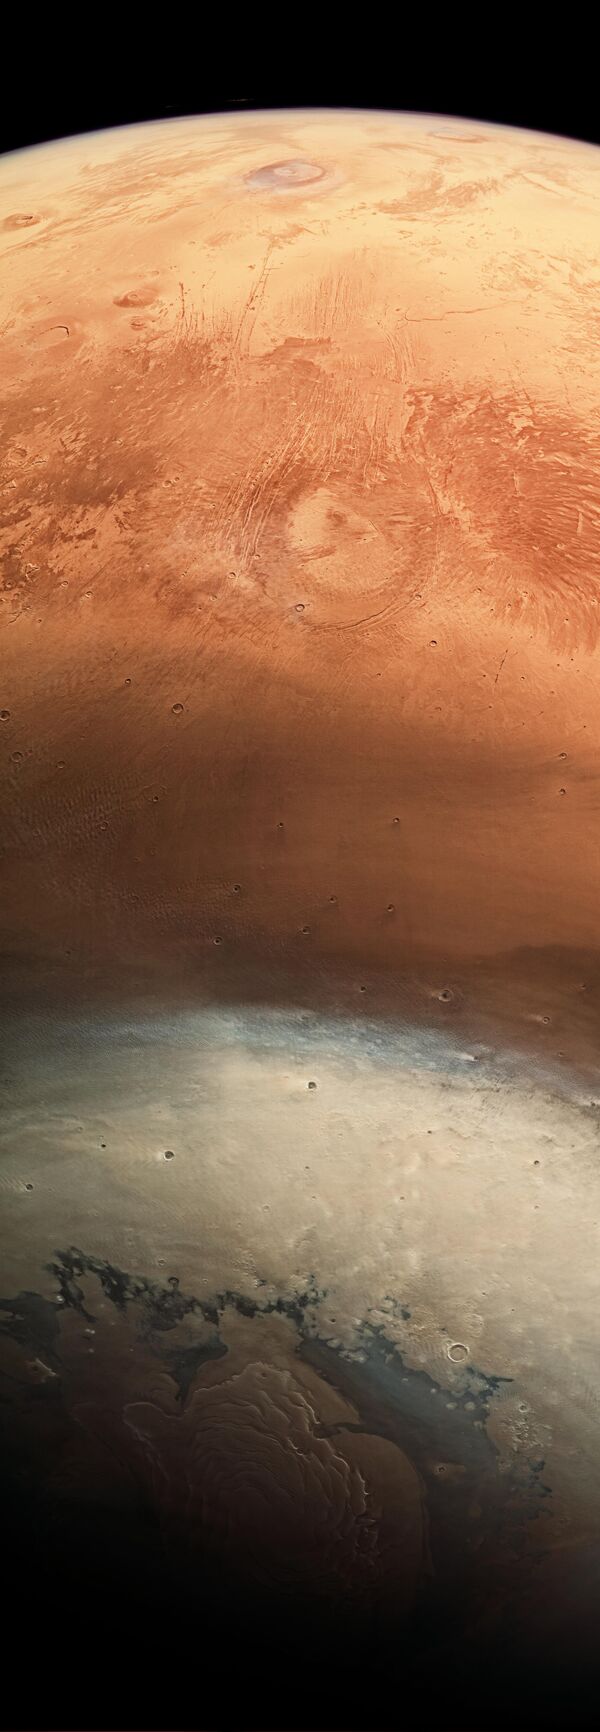 Снимок поверхности Марса, сделанный при помощи зонда Mars Express